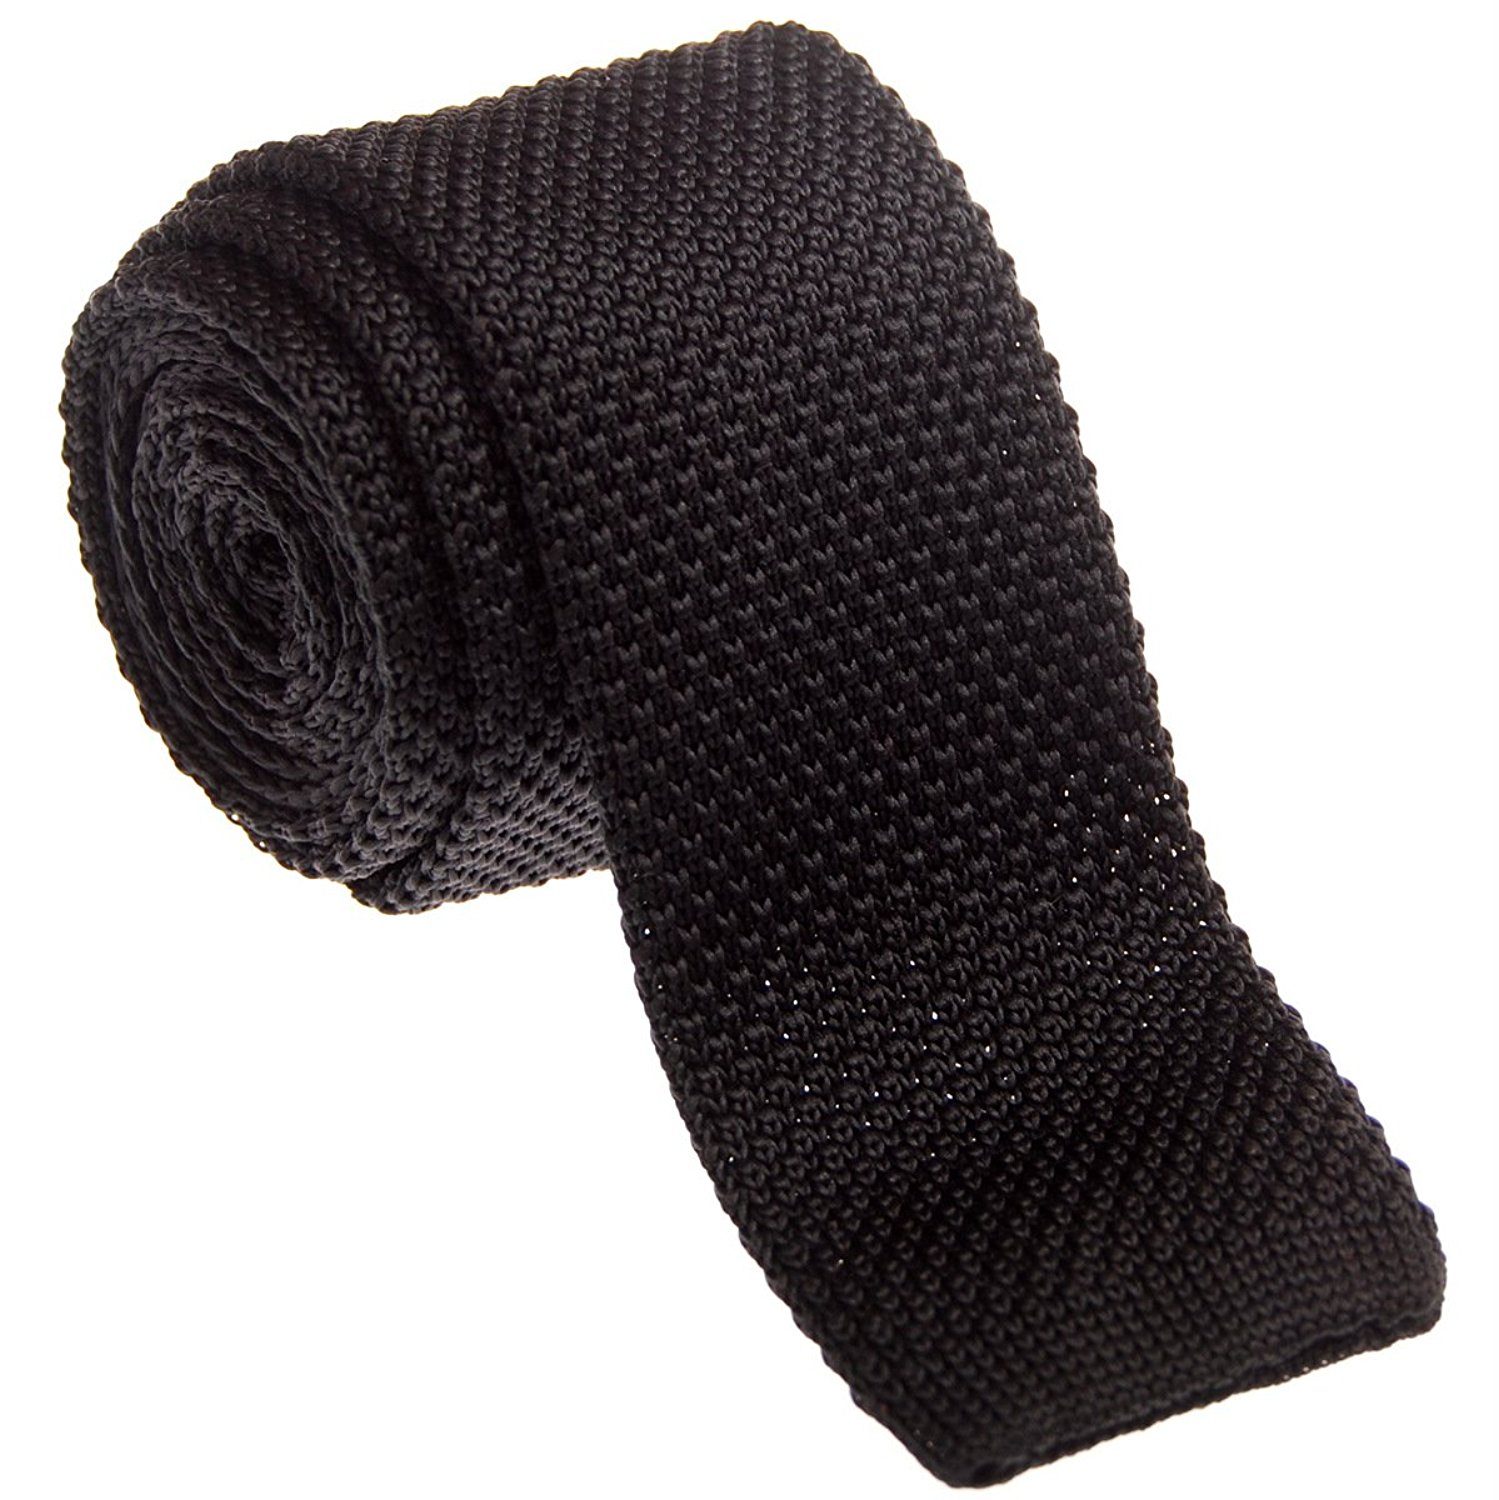 knitted ties retreez vintage smart casual menu0027s 2 ysrlpuk